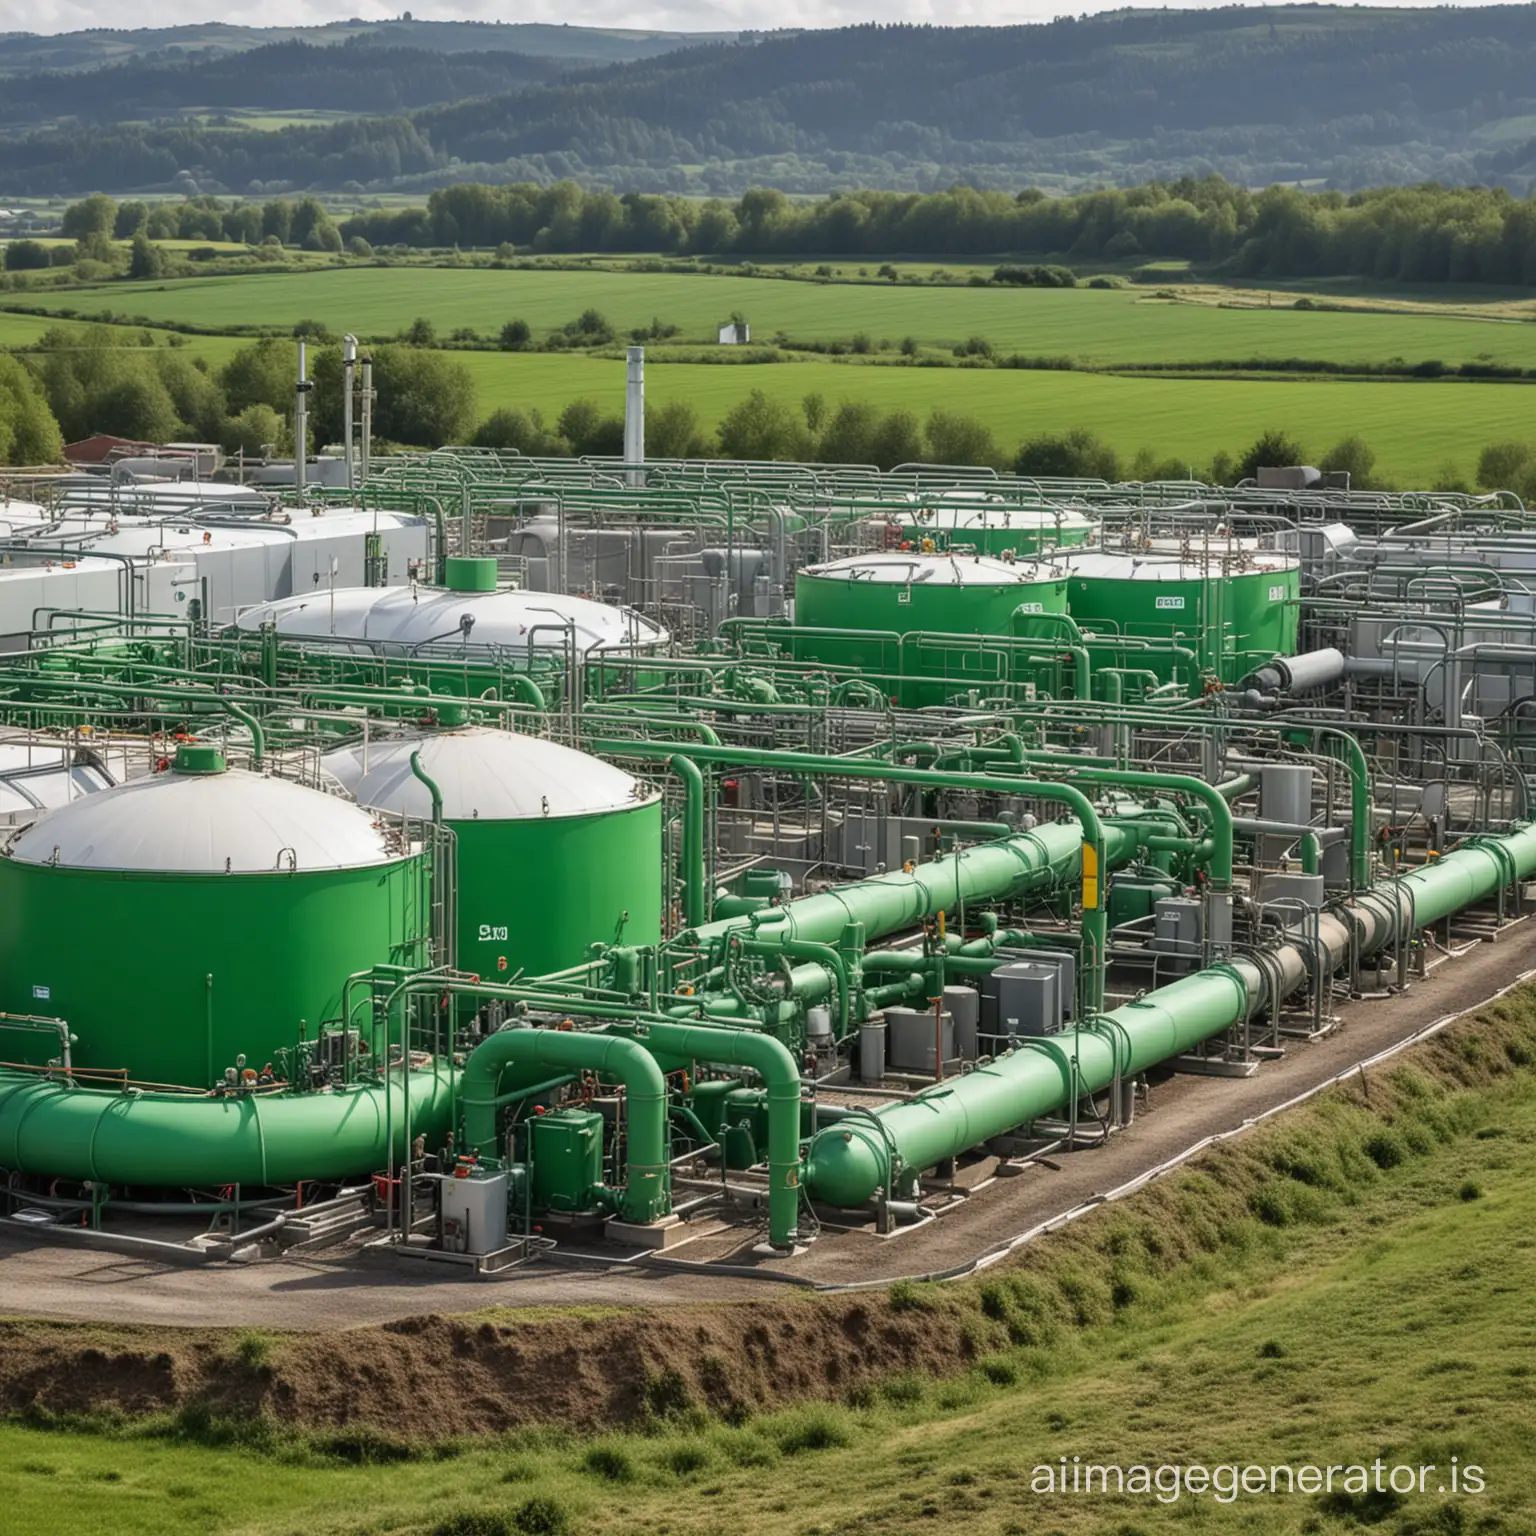 biomethane or green gas